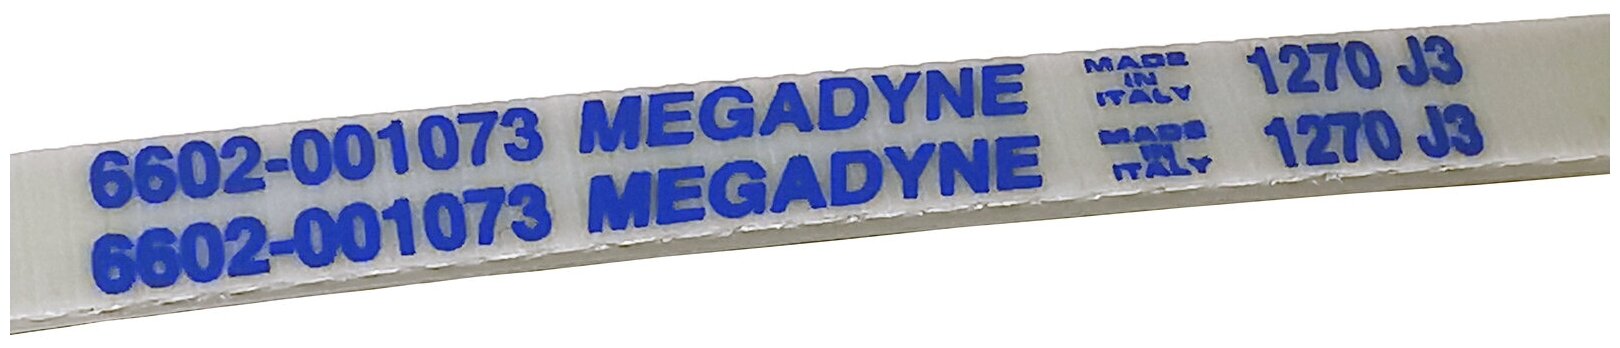 Ремень для привода стиральной машины MEGADYNE 1270 J3 Samsung, Indesit, Ariston, Whirlpool, AEG, белый